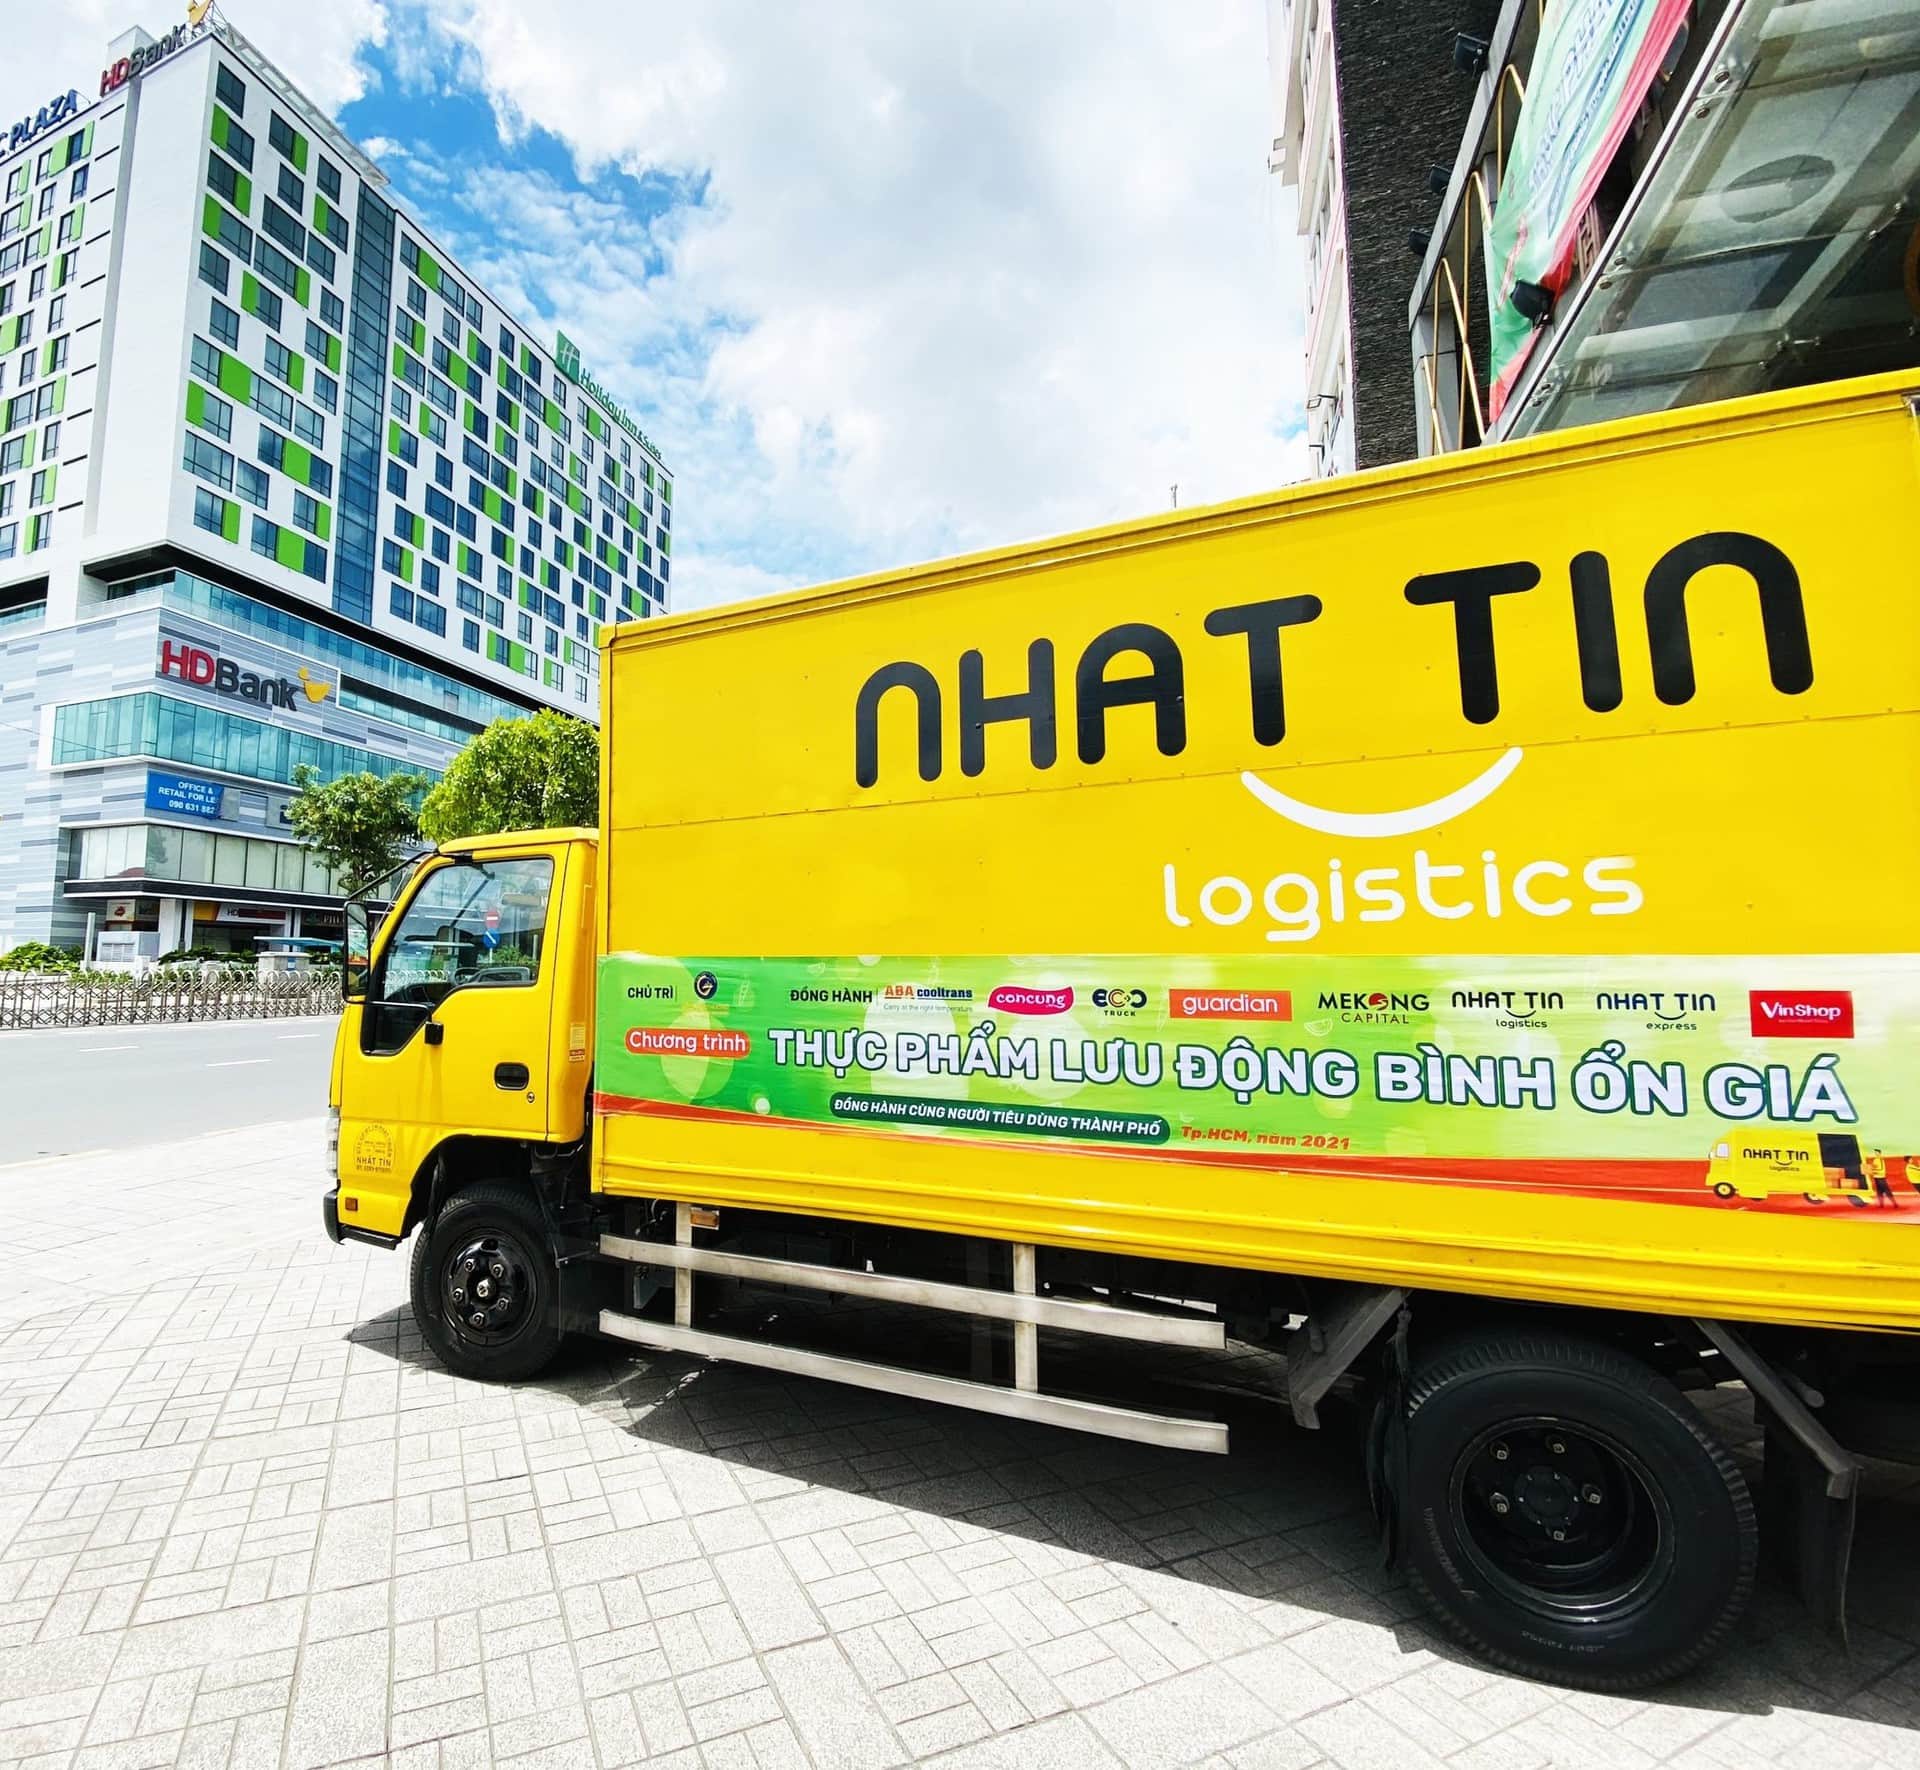 Công ty Nhất Tín Logistics là một trong những công ty logistics lớn ở Việt Nam